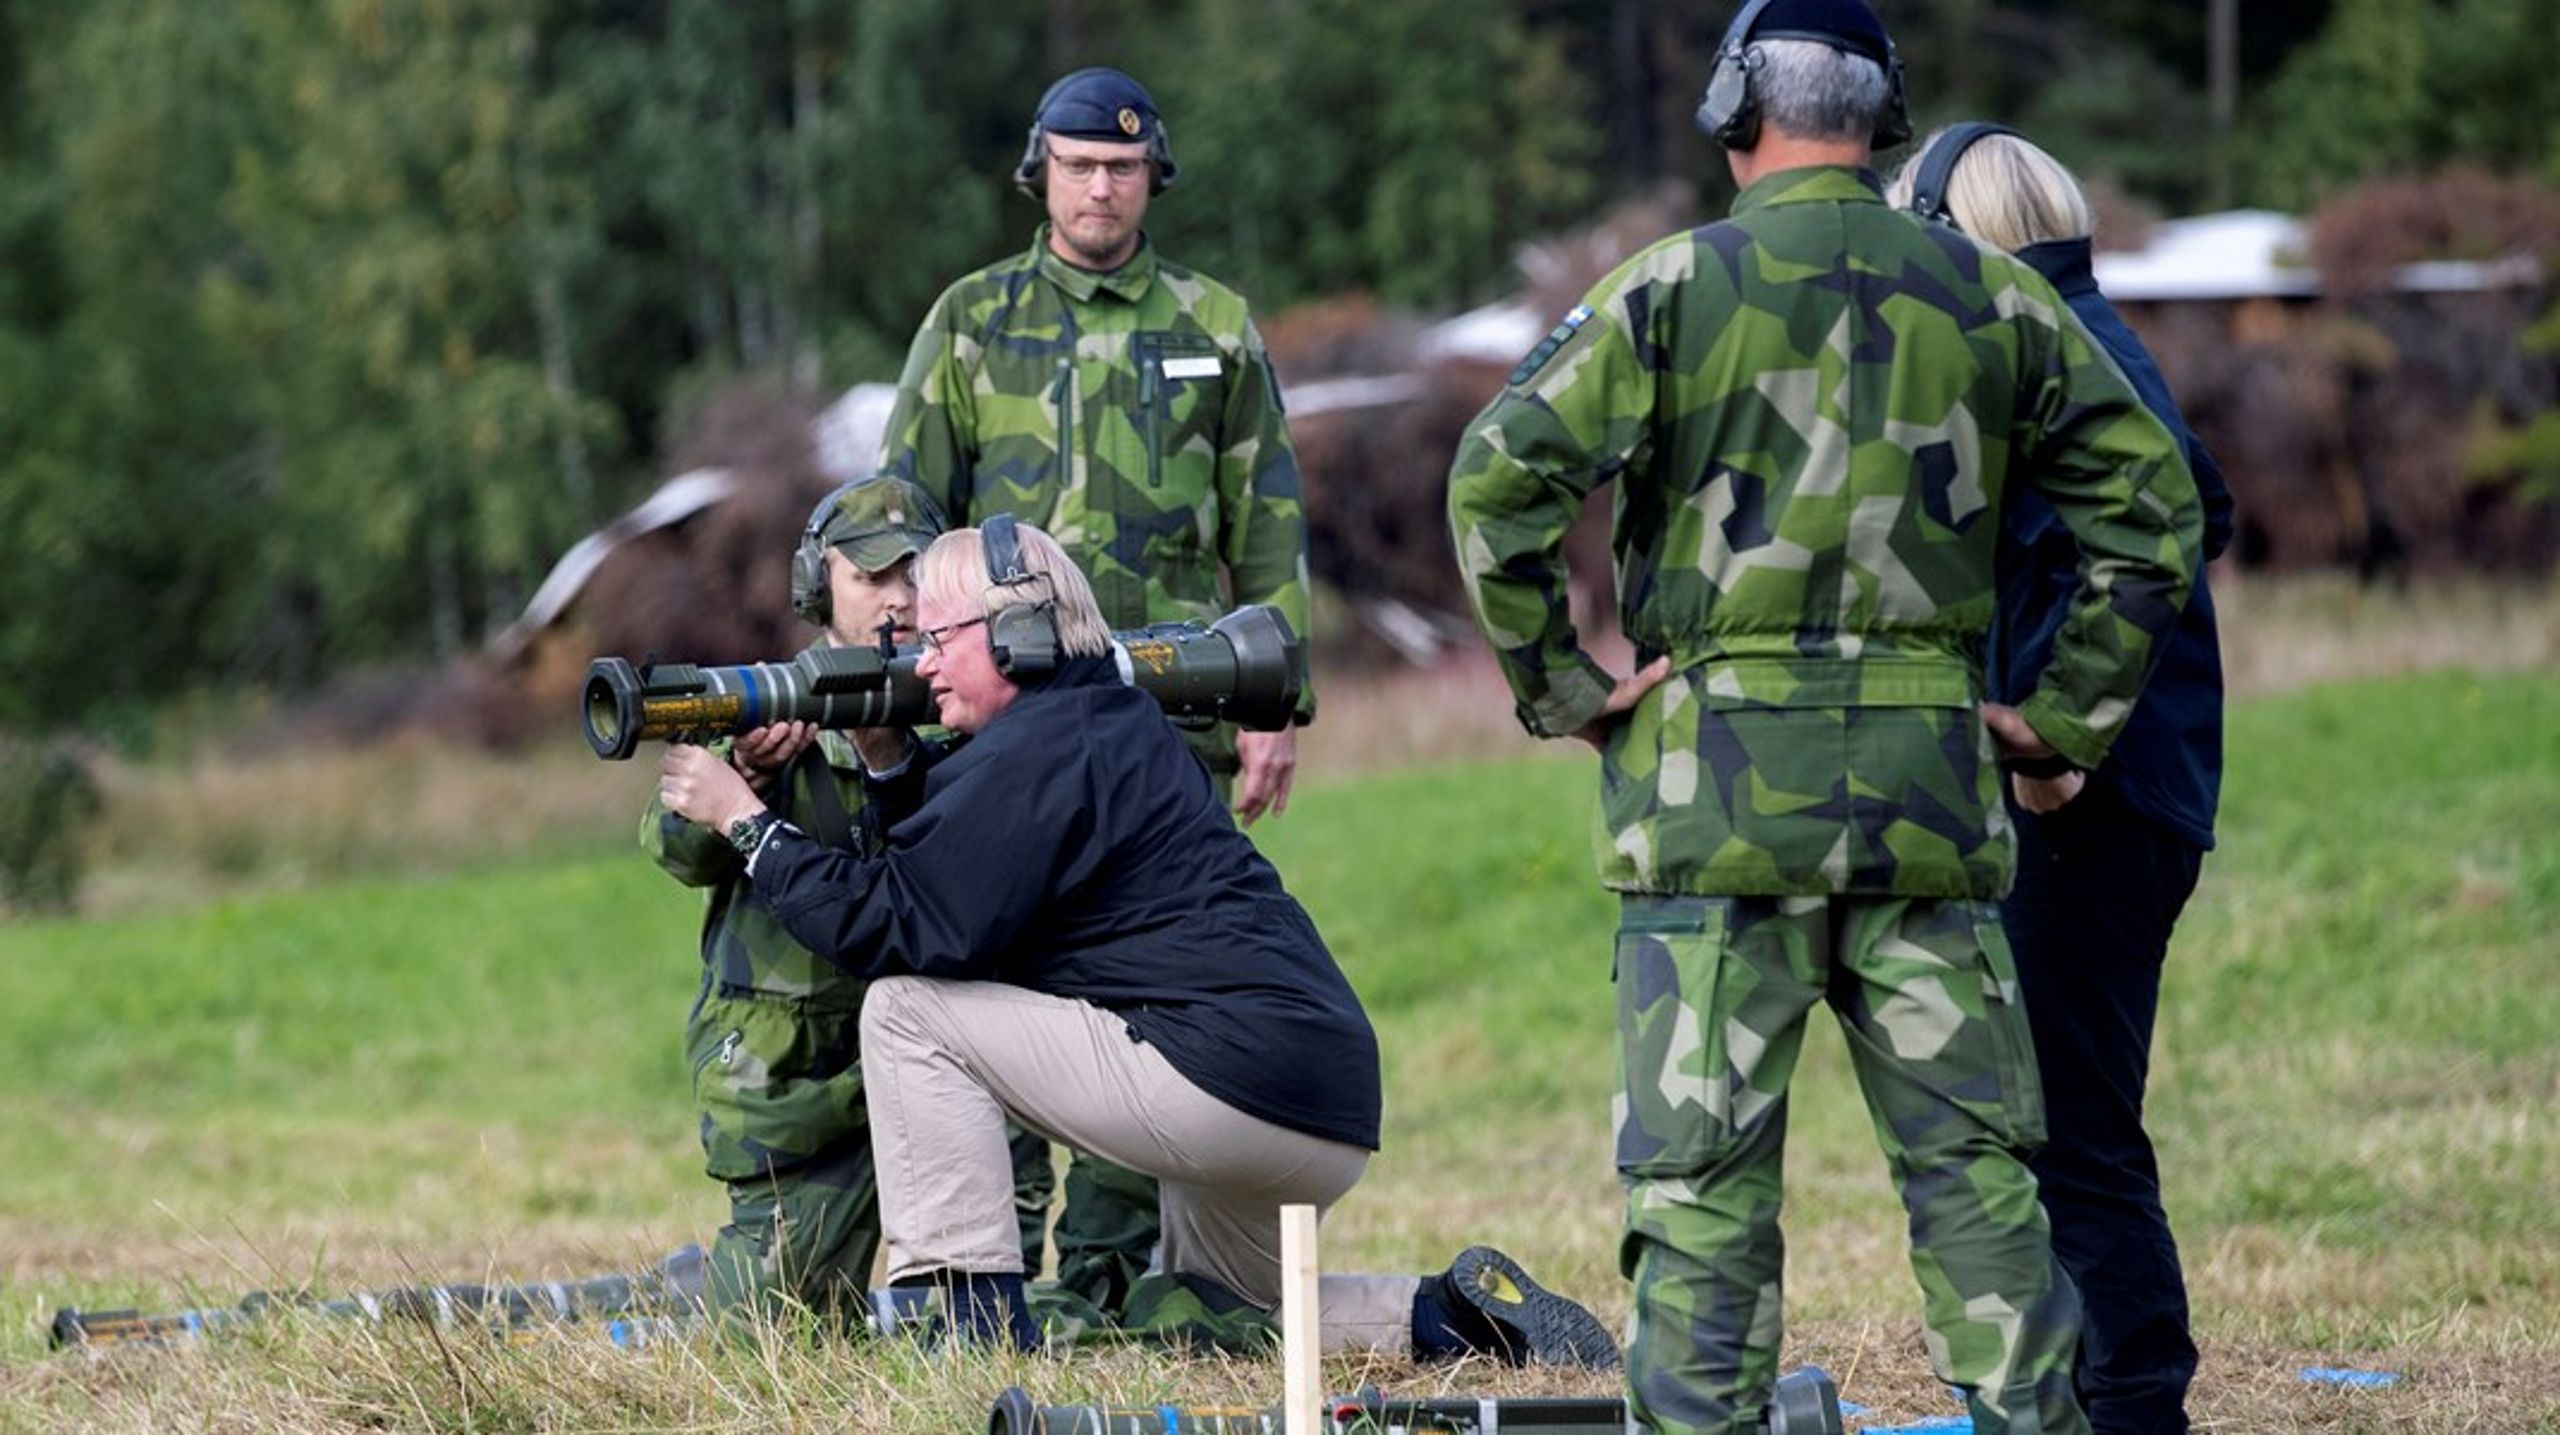 Efter en vår av tvära kast i säkerhetspolitiken, en inskickad intresseanmälan till Nato och en rekordstor ökning av försvarsanslagen är svensk politik på sätt och vis mycket annorlunda än för några månader sedan, skriver debattören.